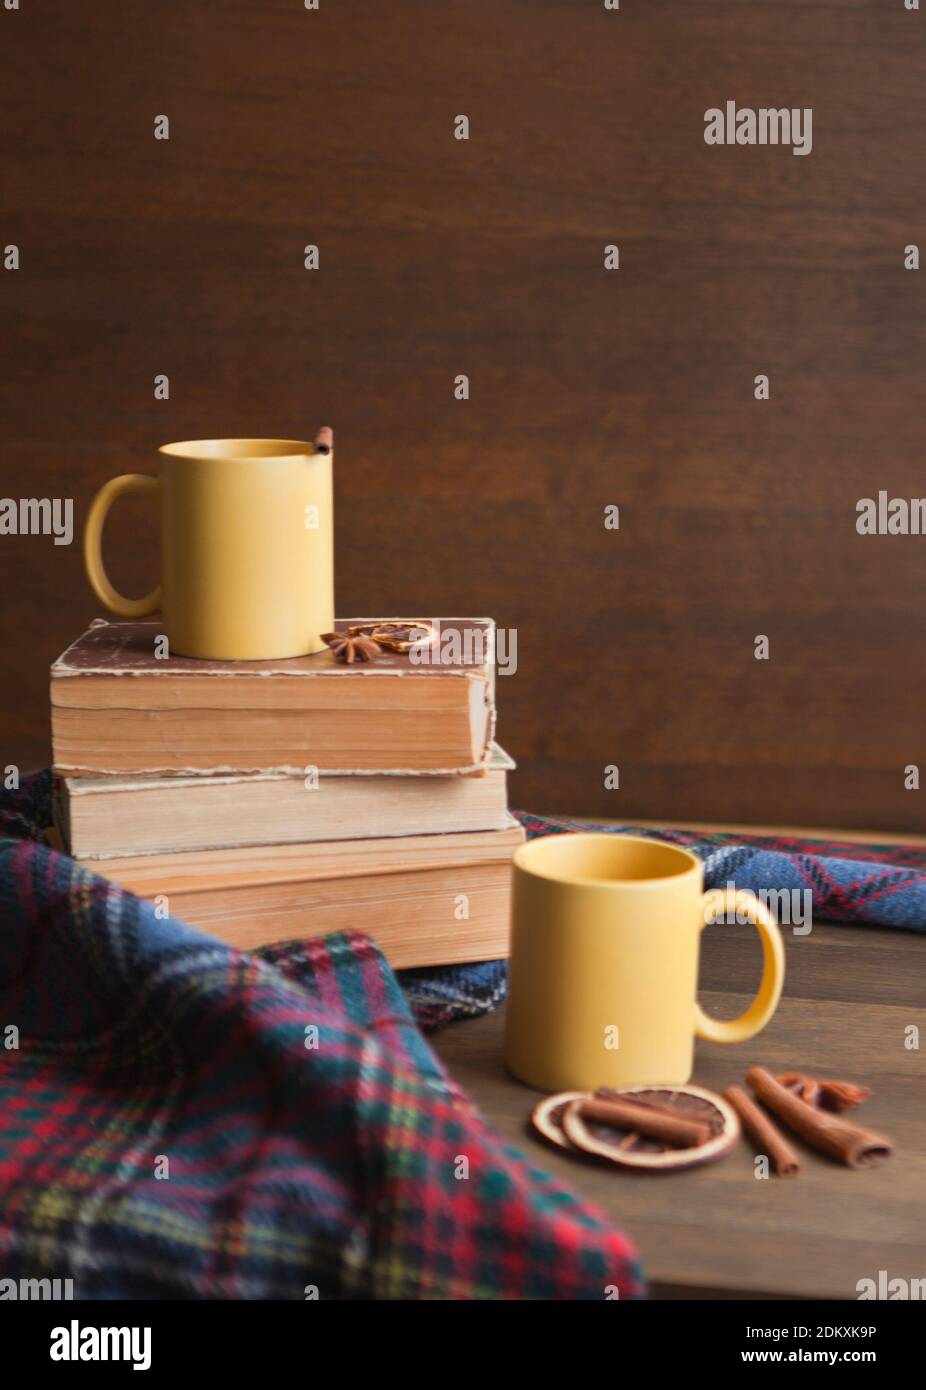 deux tasses à thé jaunes avec fond de livres, une tasse en céramique avec cannelle, des livres et une couverture avec des rouleaux et de la cannelle Banque D'Images